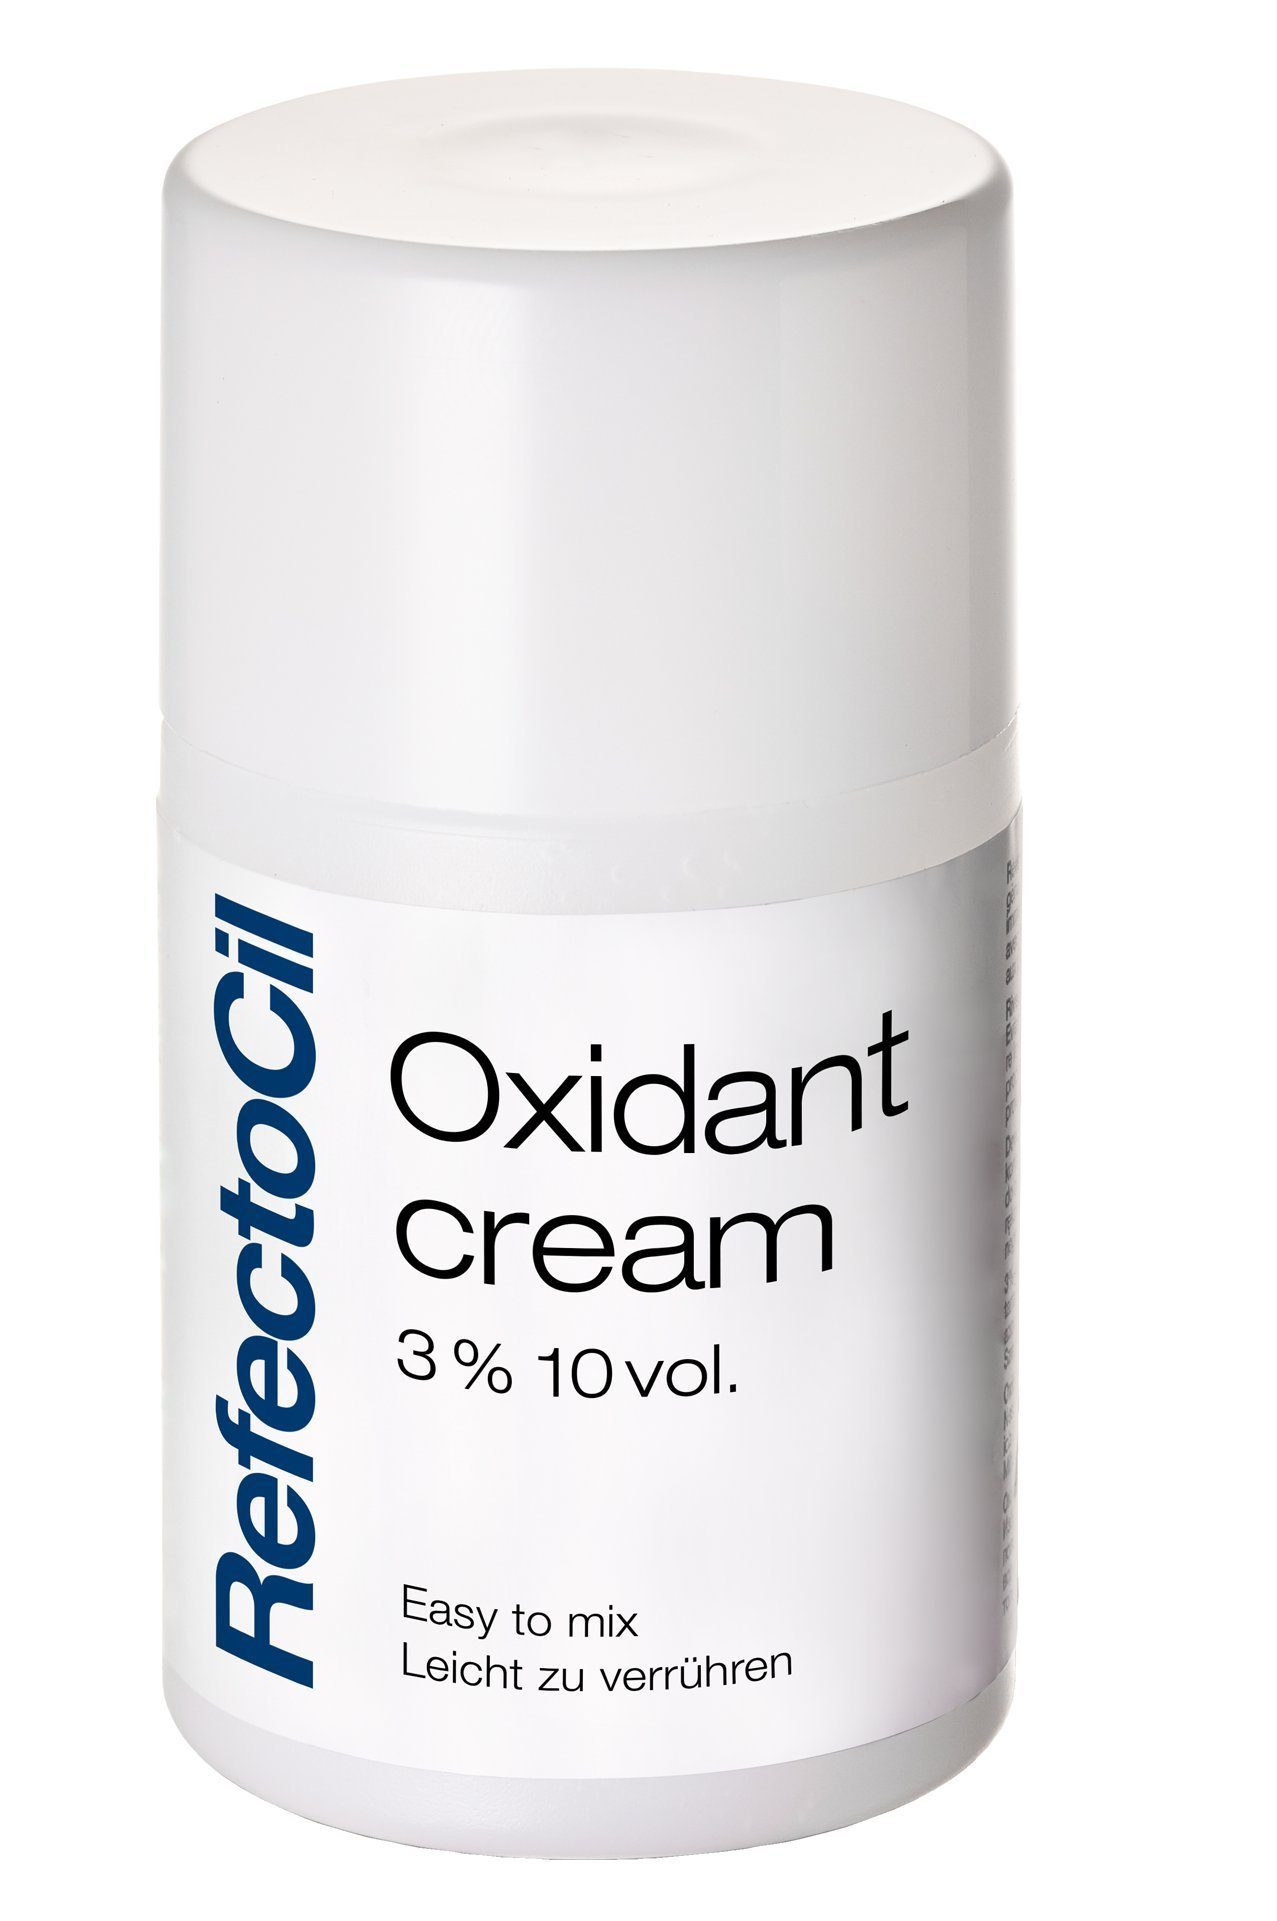 Refectocil Entwickler Oxidant CREME 3% mit 100ml, Creme Flüssigkeit